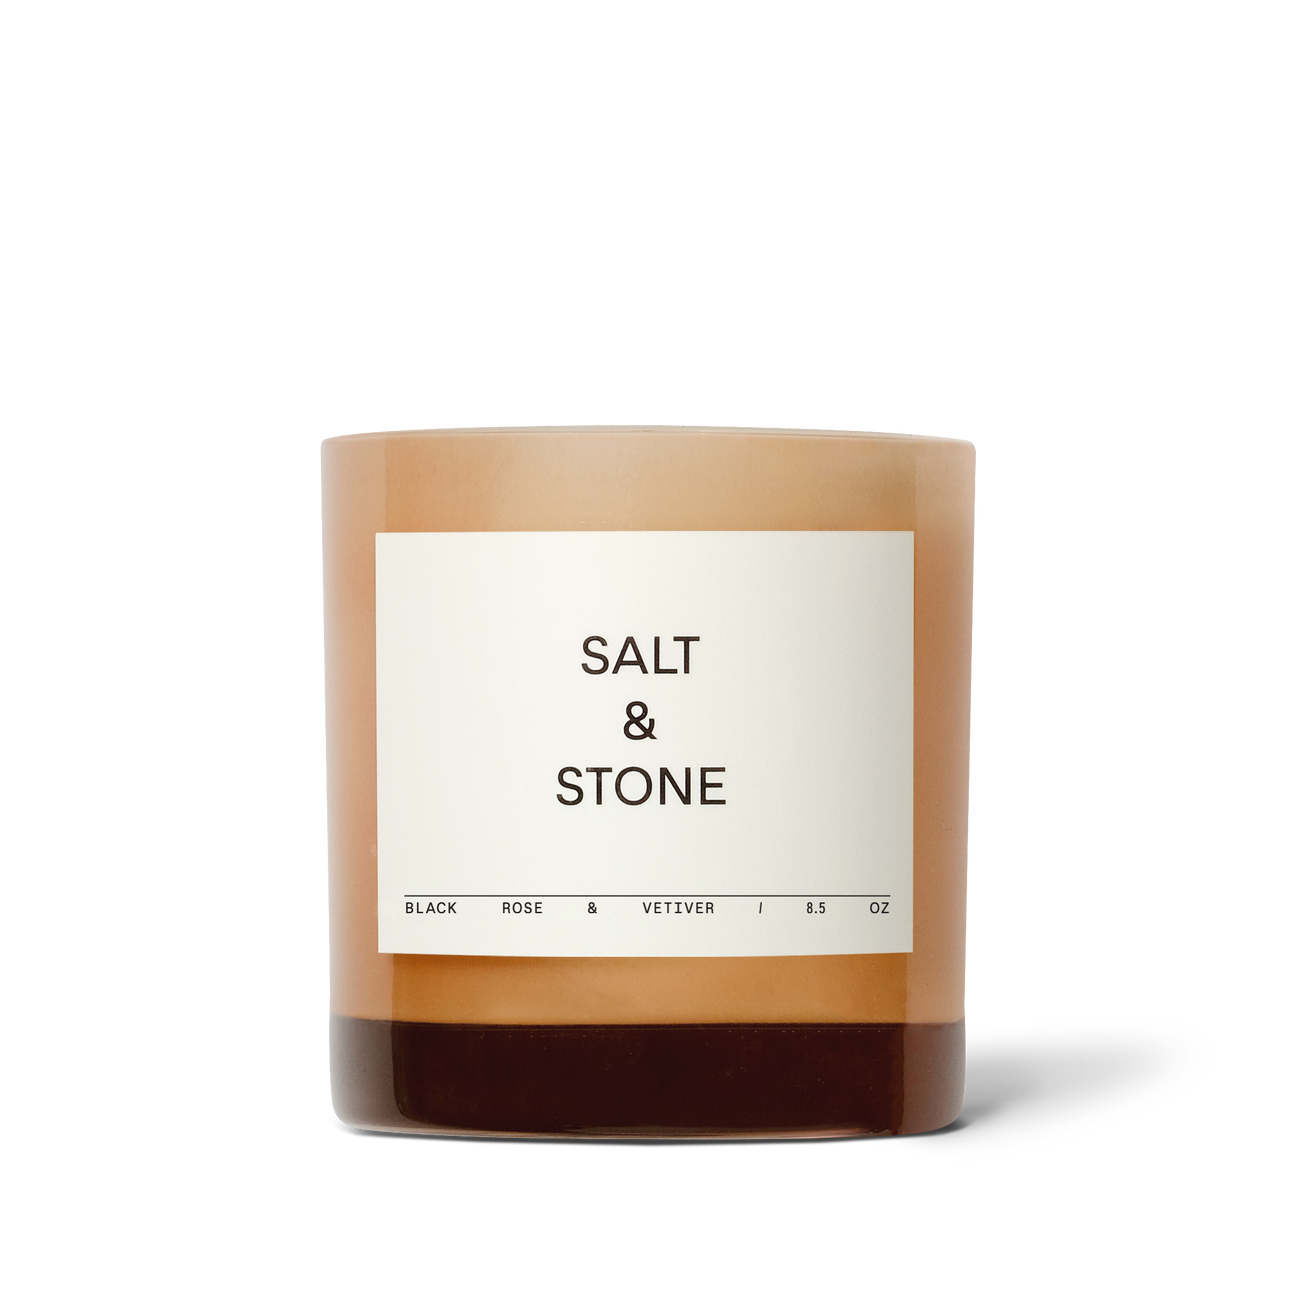 Salt & Stone Candle - Black Rose & Vetiver